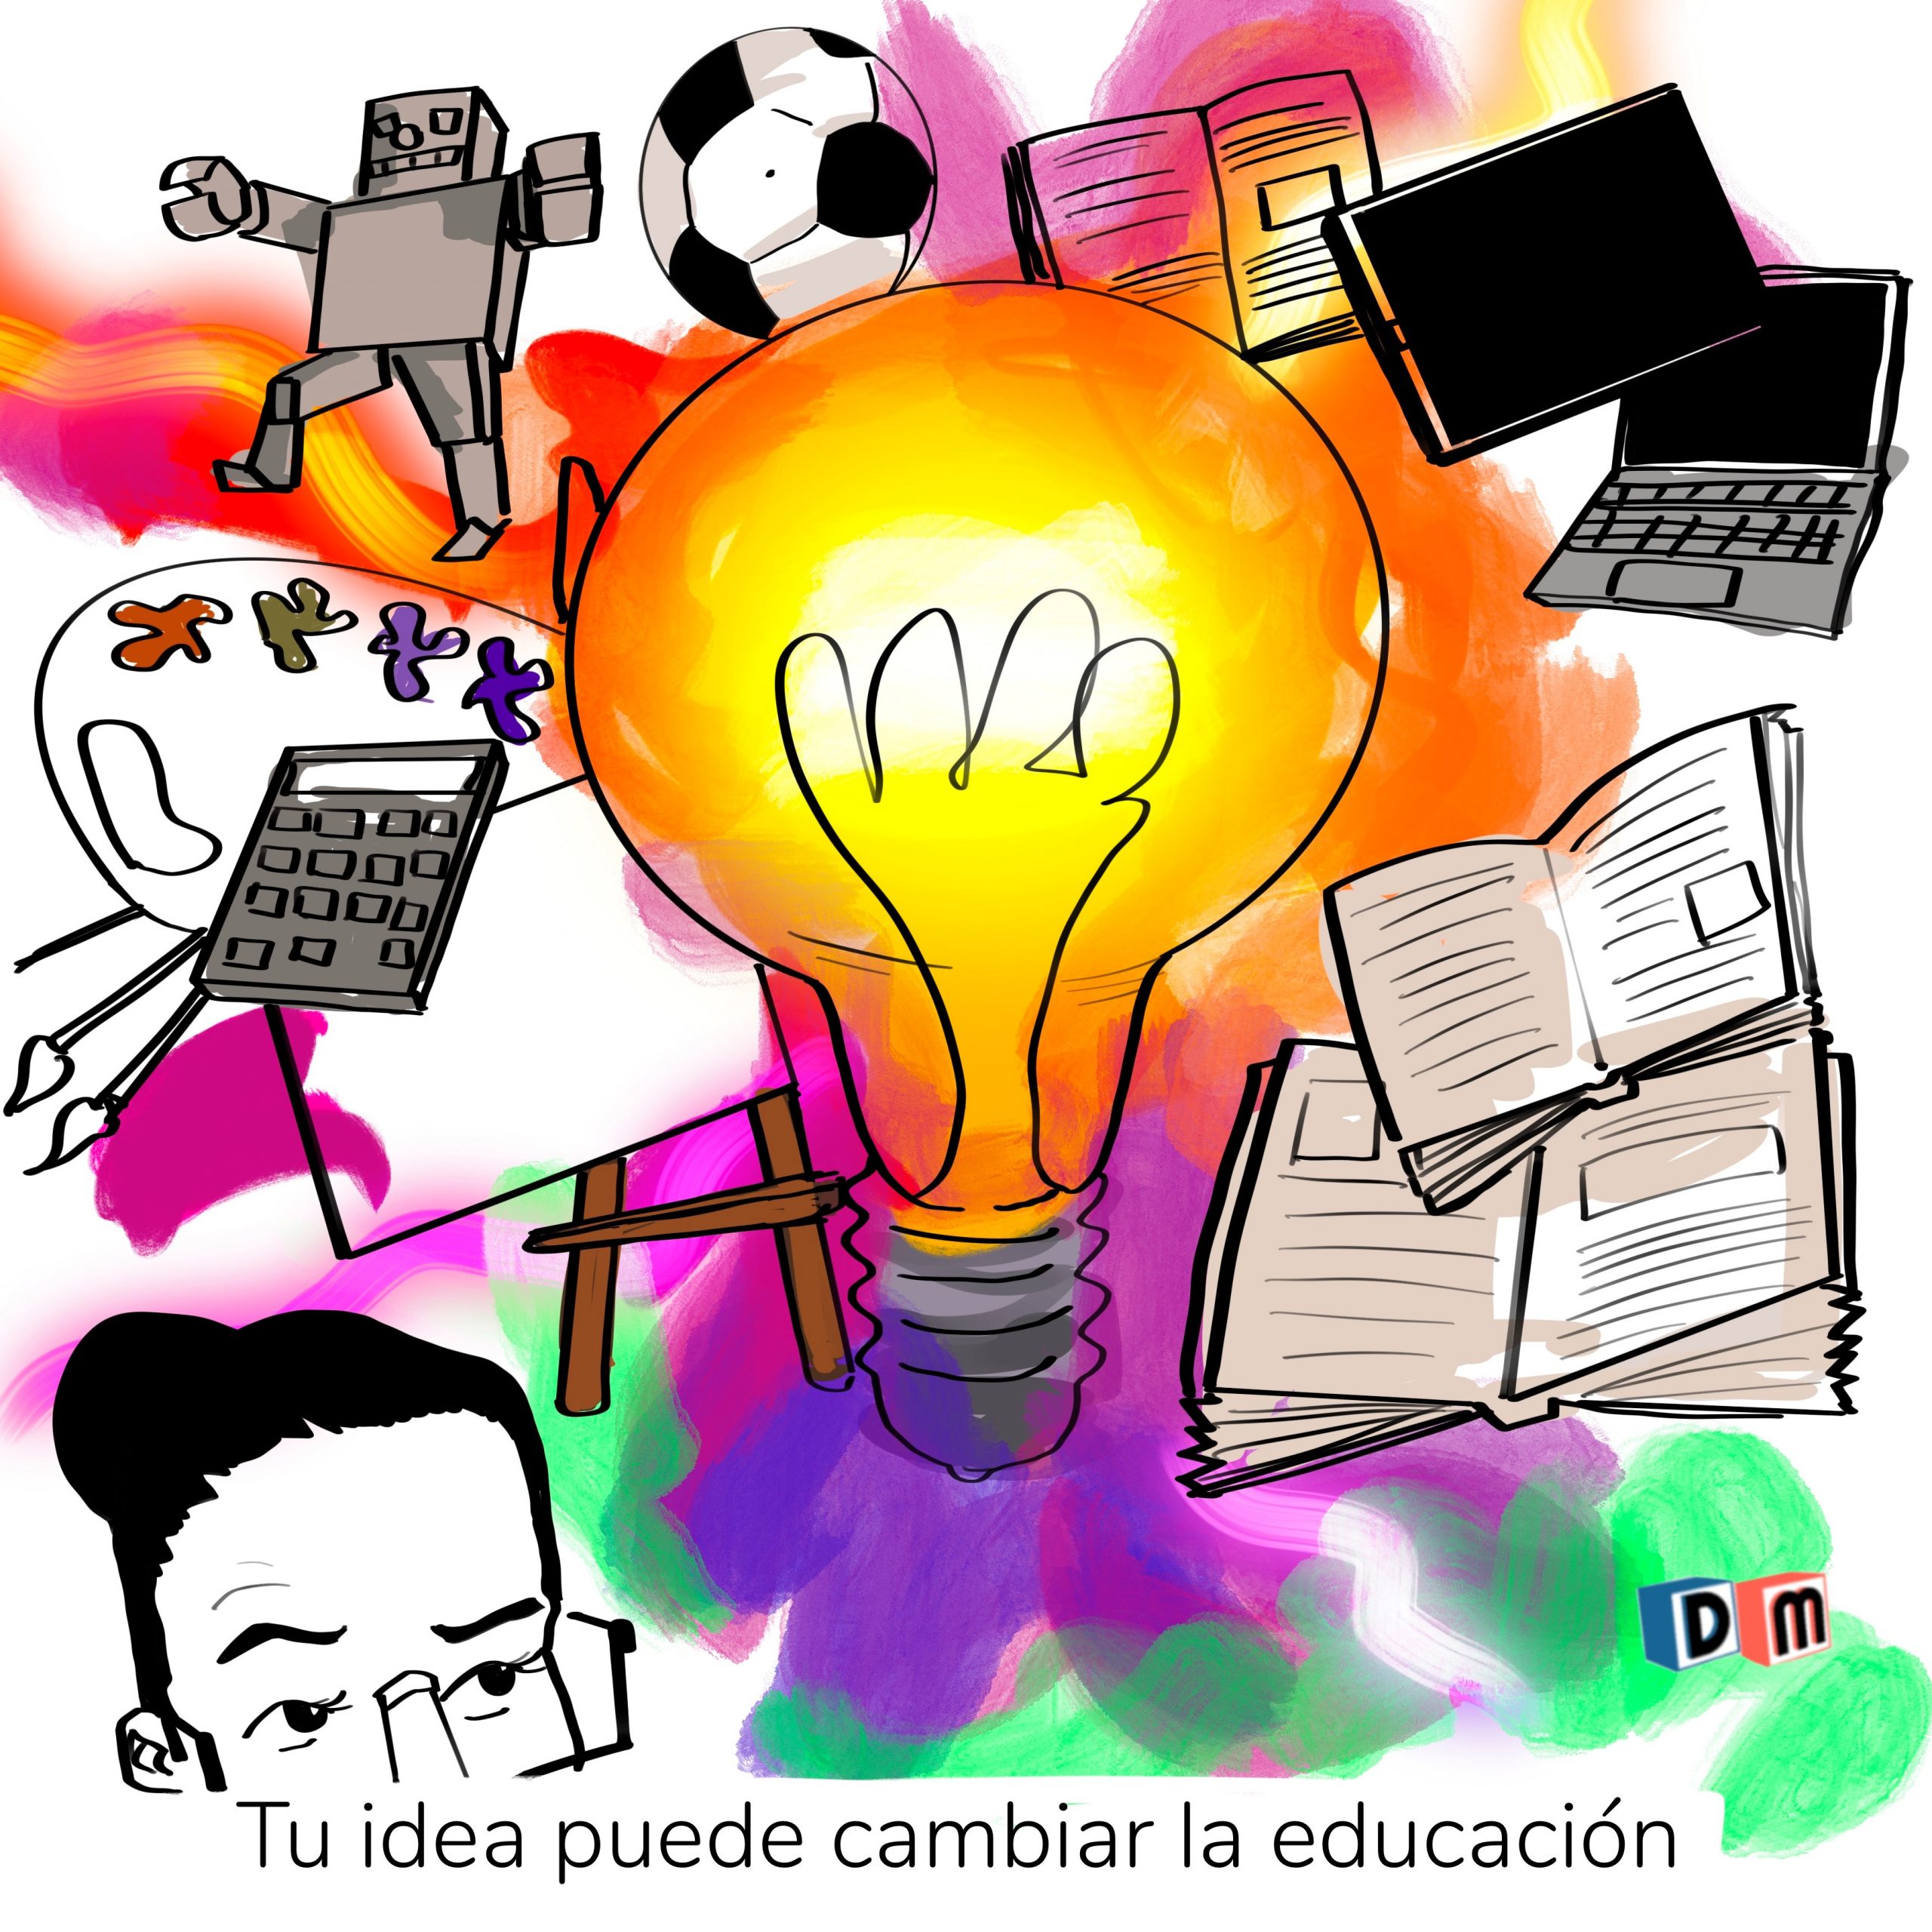 David Mora_Viñeta 36_Tu idea puede cambiar la educación